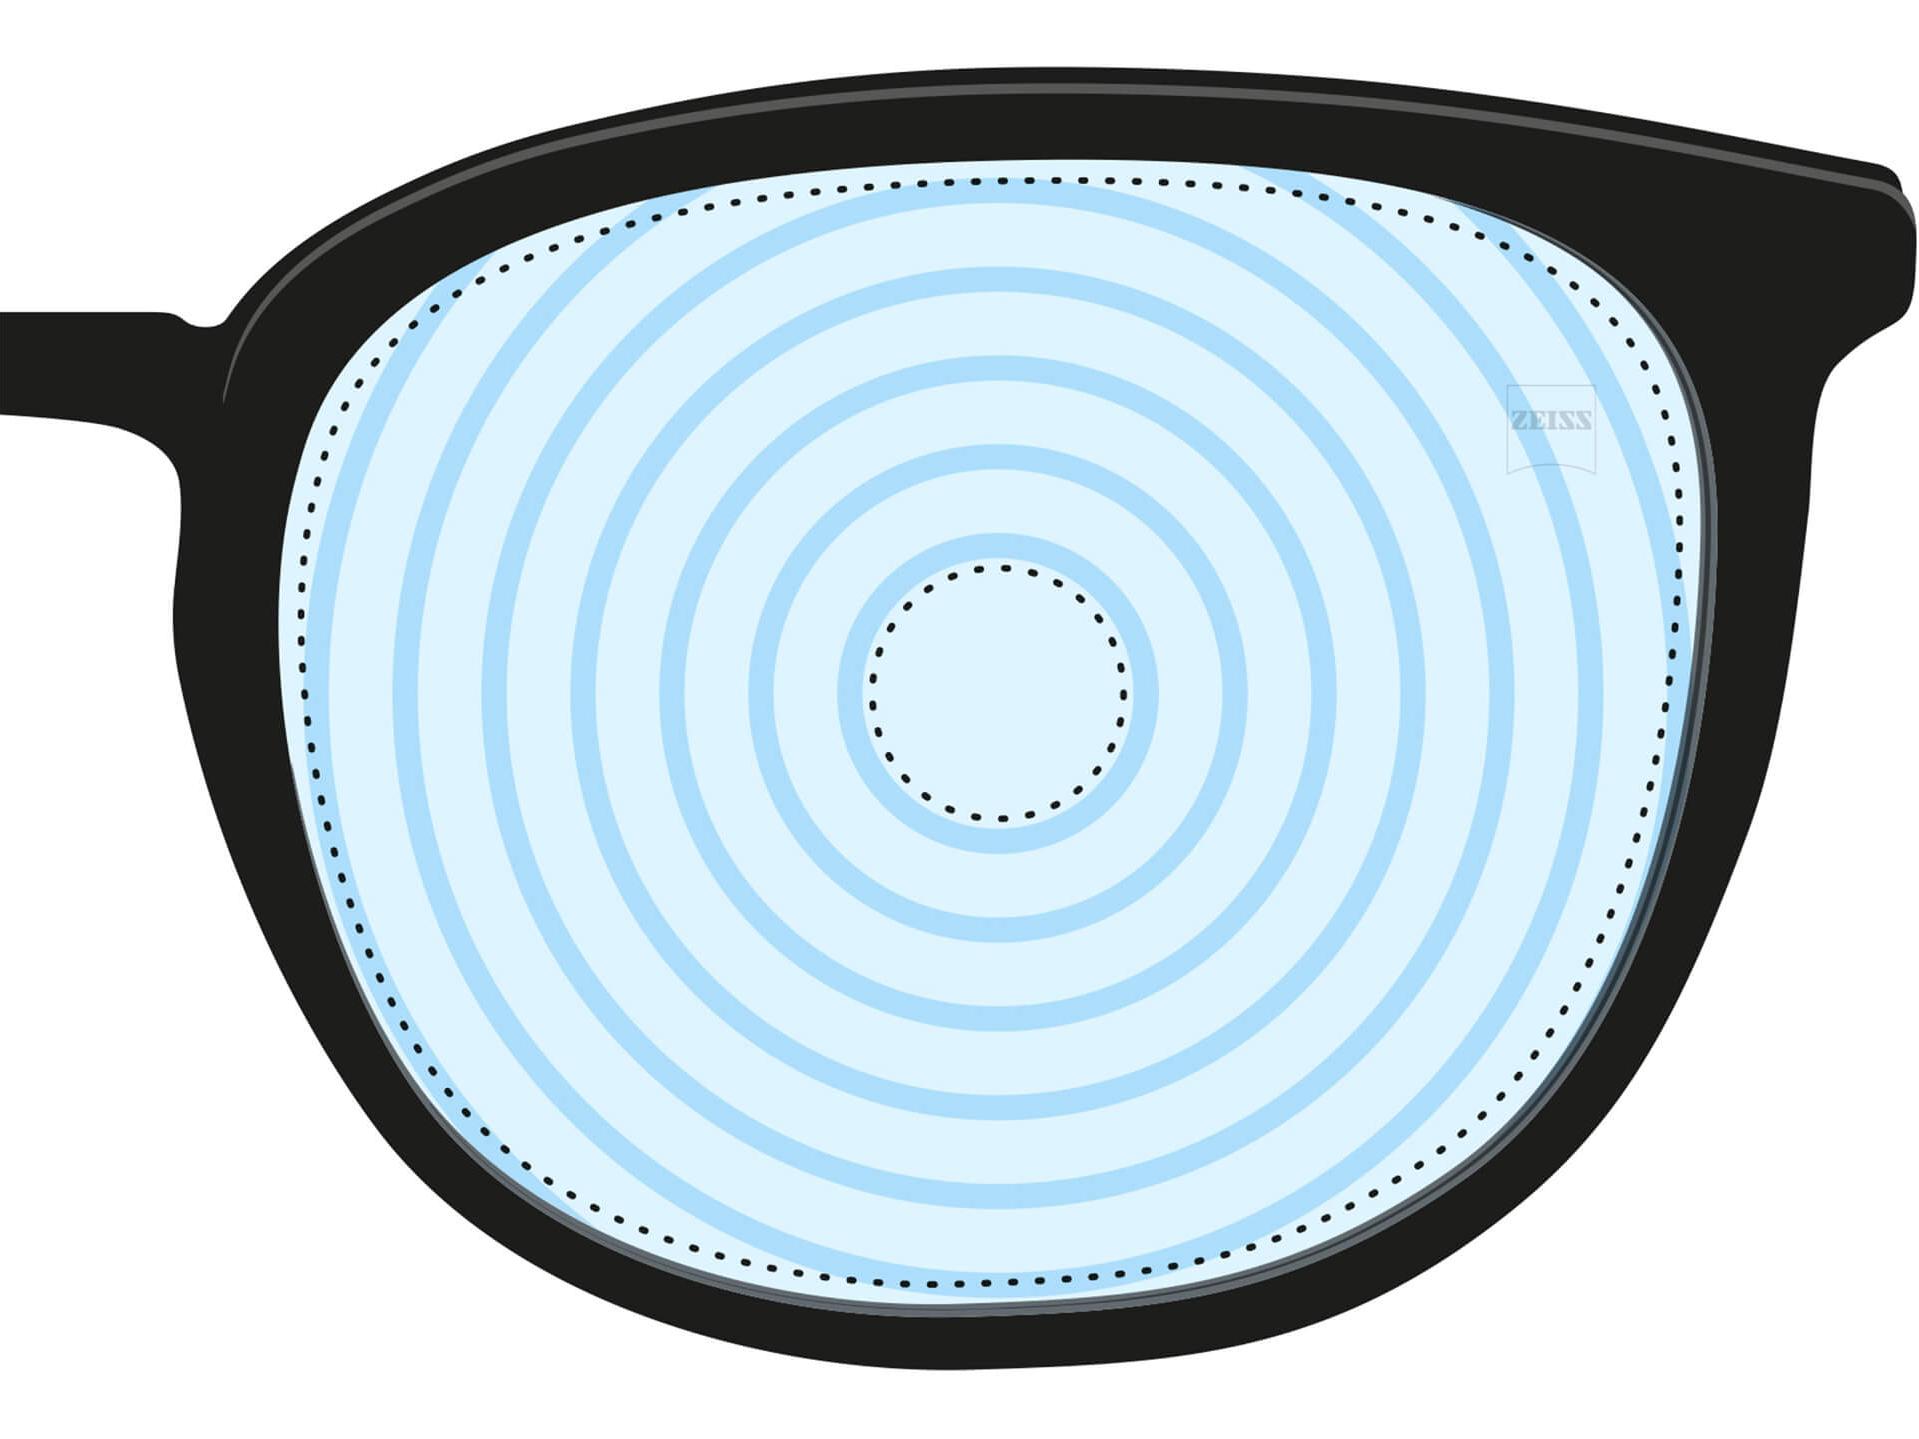 Ilustração de uma lente para miopia. Ela tem círculos concêntricos representando os diferentes graus da lente. É um exemplo de lente projetada para uma finalidade específica.